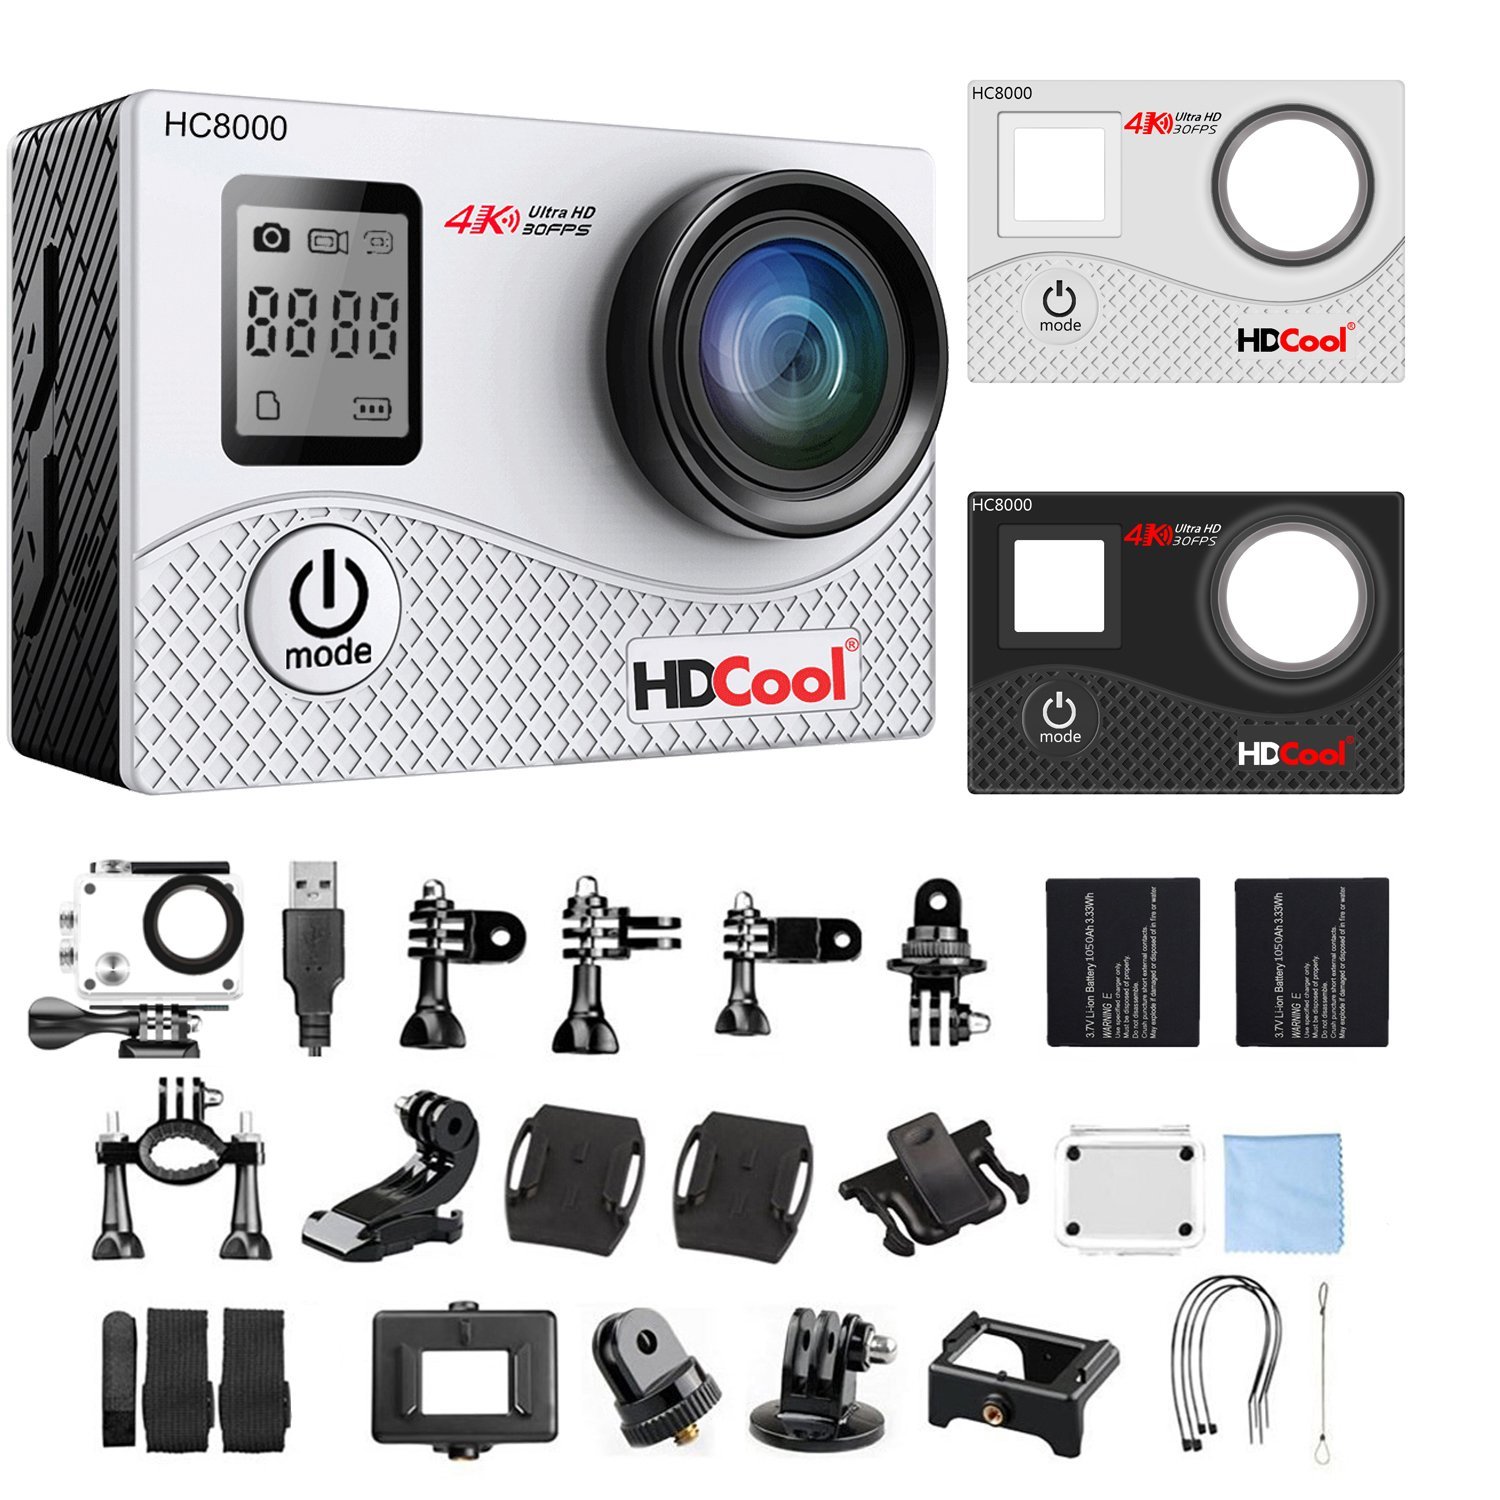 6000円台で手振れ補正付きのアクションカメラ Hdcool Hc8000 ごくうのいろいろ 癒火